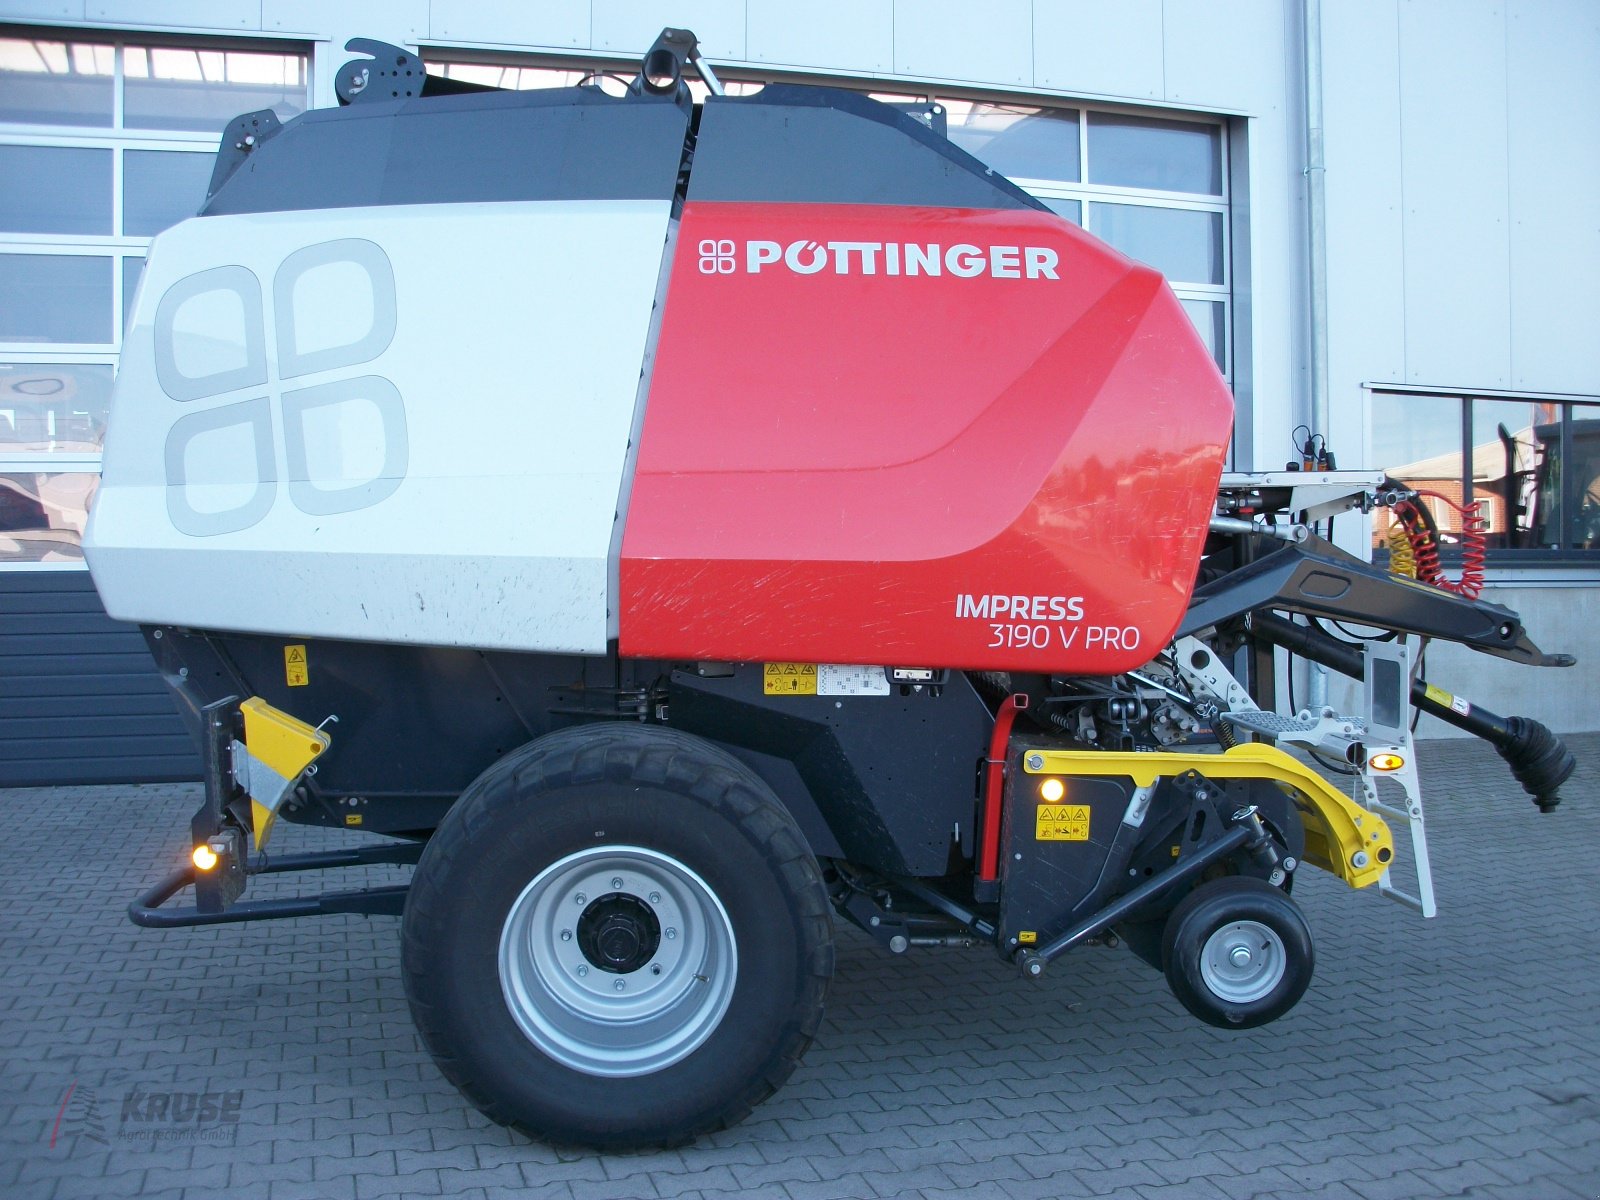 Rundballenpresse des Typs Pöttinger Impress 3190 V PRO, Gebrauchtmaschine in Fürstenau (Bild 4)